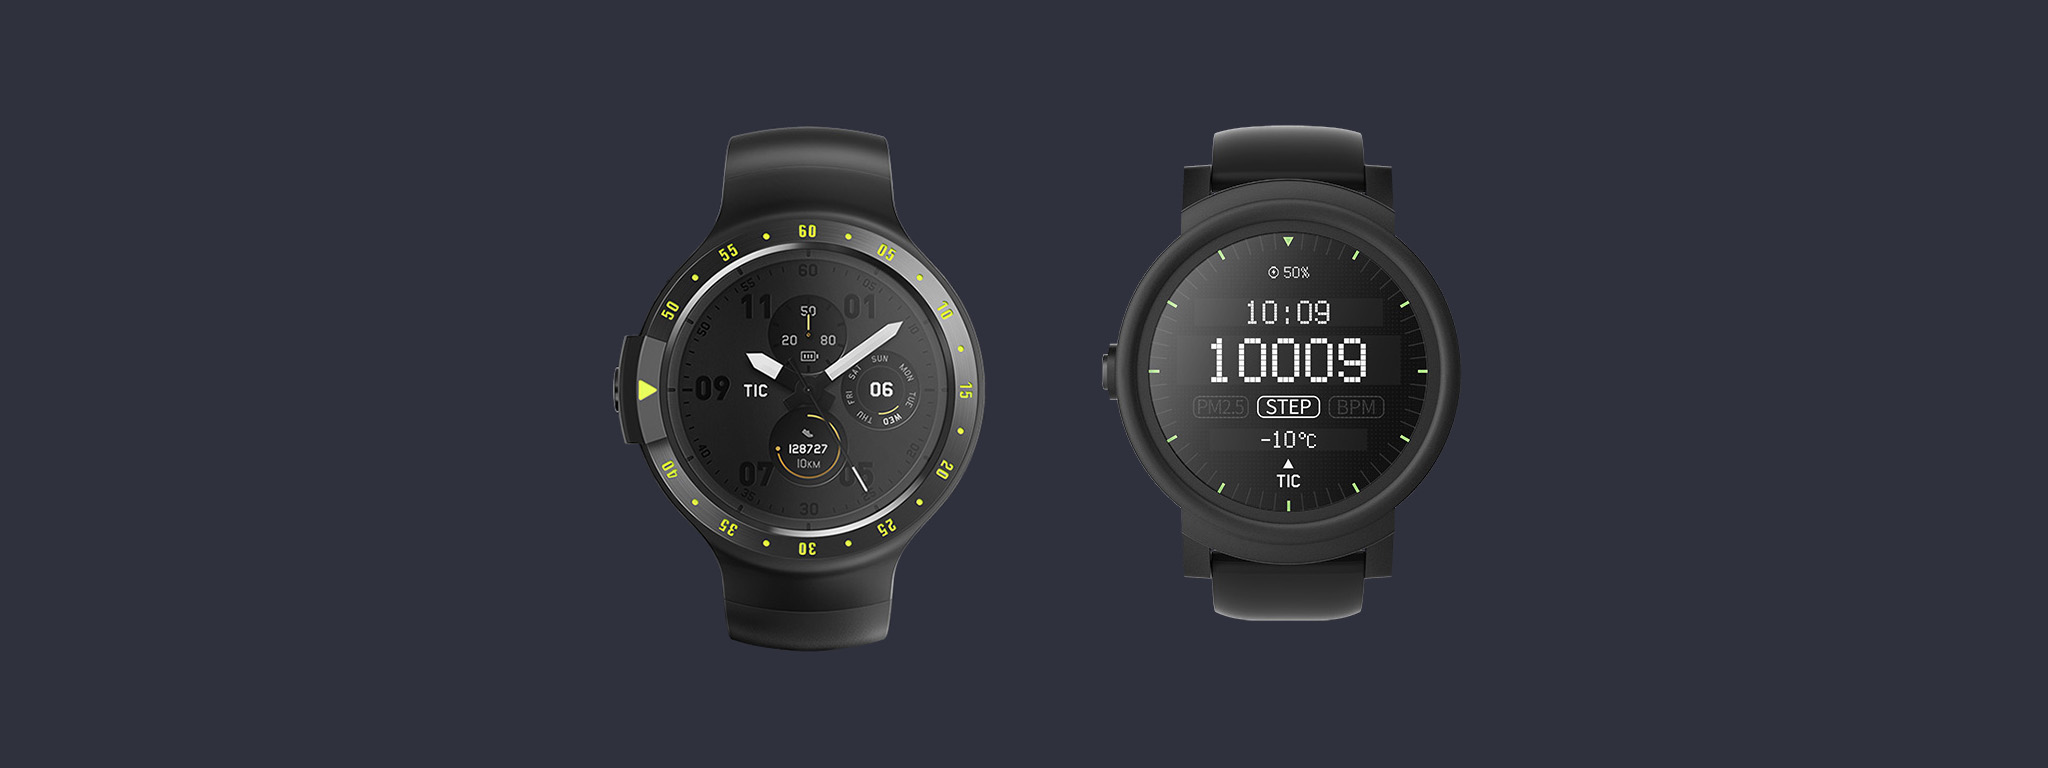 Ticwatch S & E: Ticwatch trở lại, chạy Android Wear, GPS tích hợp, giá từ 159 USD